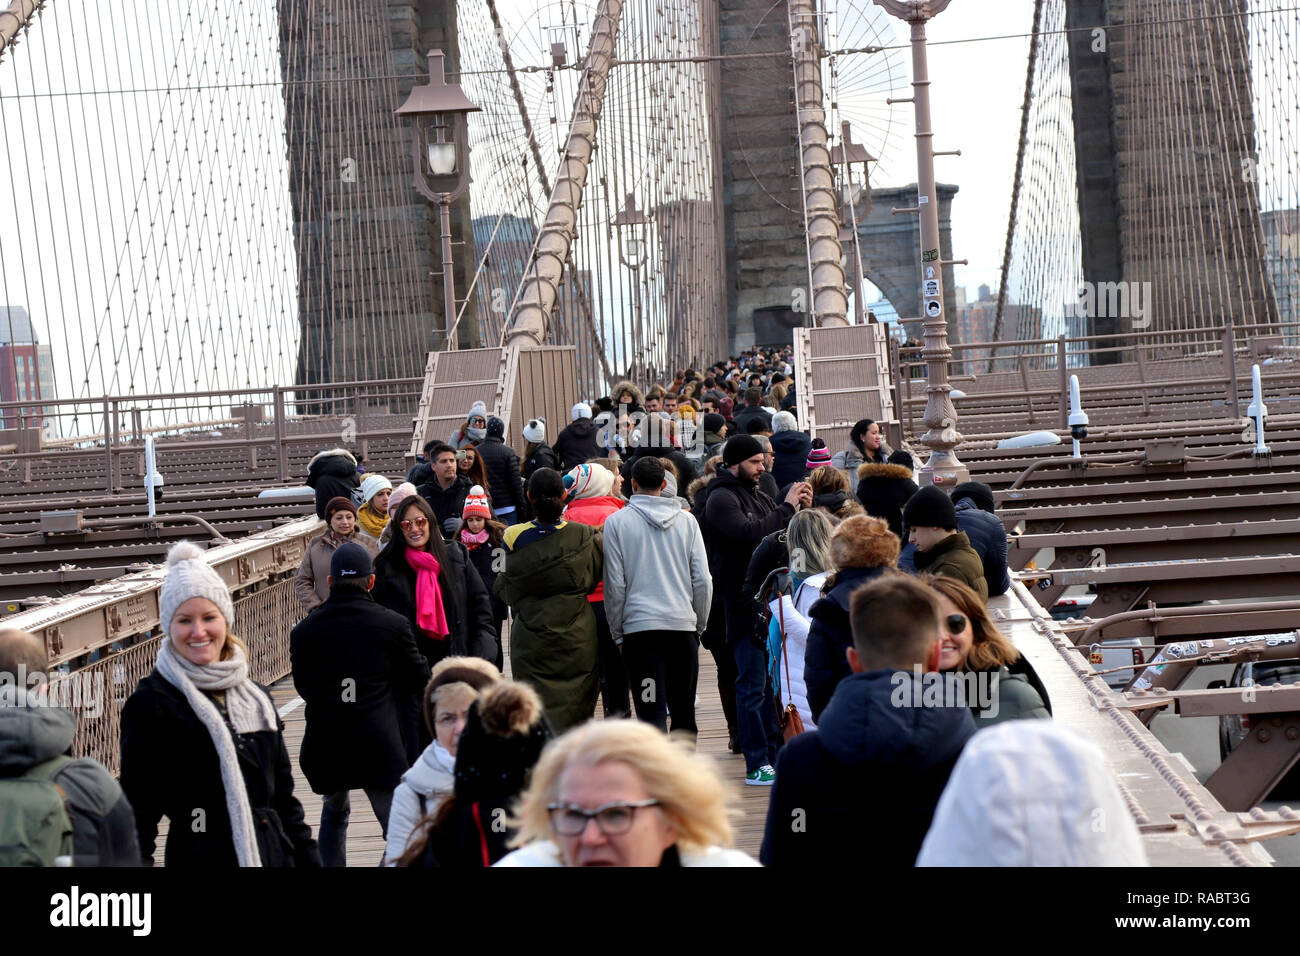 New York, NY, STATI UNITI D'AMERICA. 3rd. Jan, 2019. Il celeberrimo Ponte di Brooklyn è stato parzialmente chiuso il 31 dicembre, 2018. Il ponte che collega Brooklyn e Manhattan oltre l'East River, normalmente vede 10.000 pedoni e ciclisti 5.000 al giorno, era così affollato che le autorità della città sceglie di chiudere la passerella oltre le preoccupazioni per la sicurezza che richiede alcuni Newyorkesi per scherzo che forse è giunto il momento di imporre un canone di accesso. Viene mostrato il traffico sul ponte il 3 gennaio, 2019.© 2019 G. Ronald Lopez/DigiPixsAgain.us/Alamy Live News Foto Stock